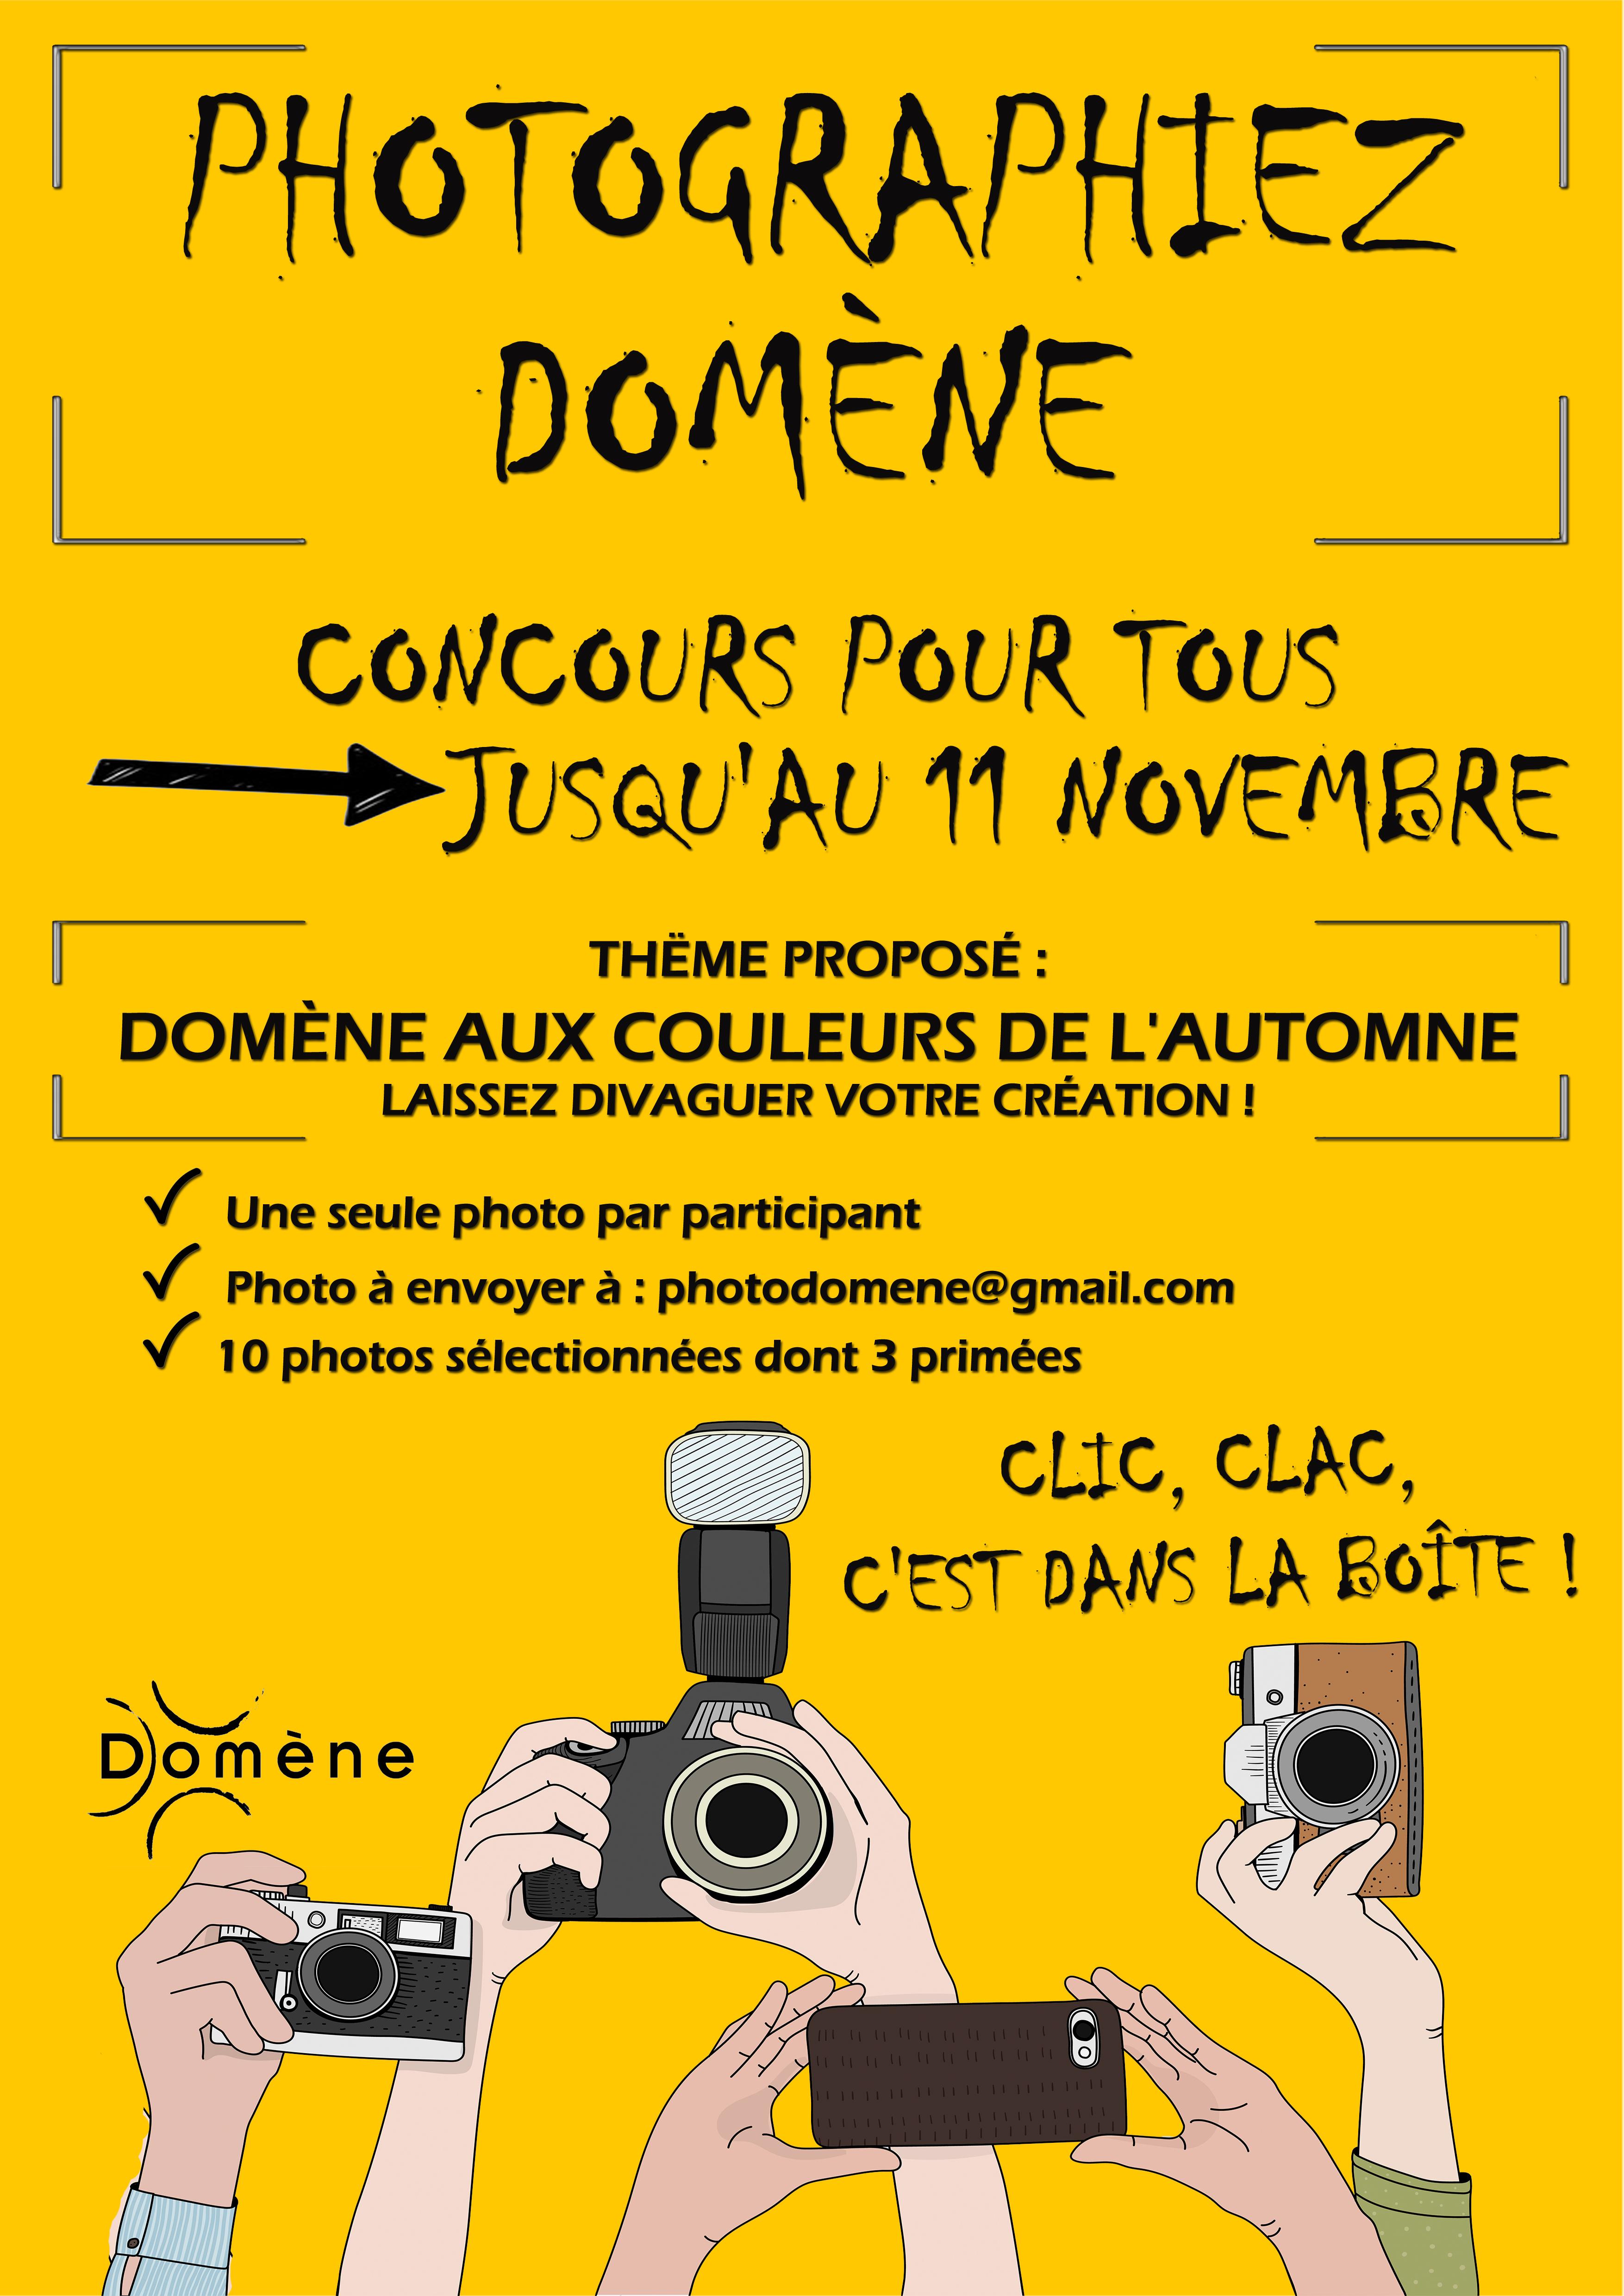 Image de couverture - Concours "Photographiez Domène"